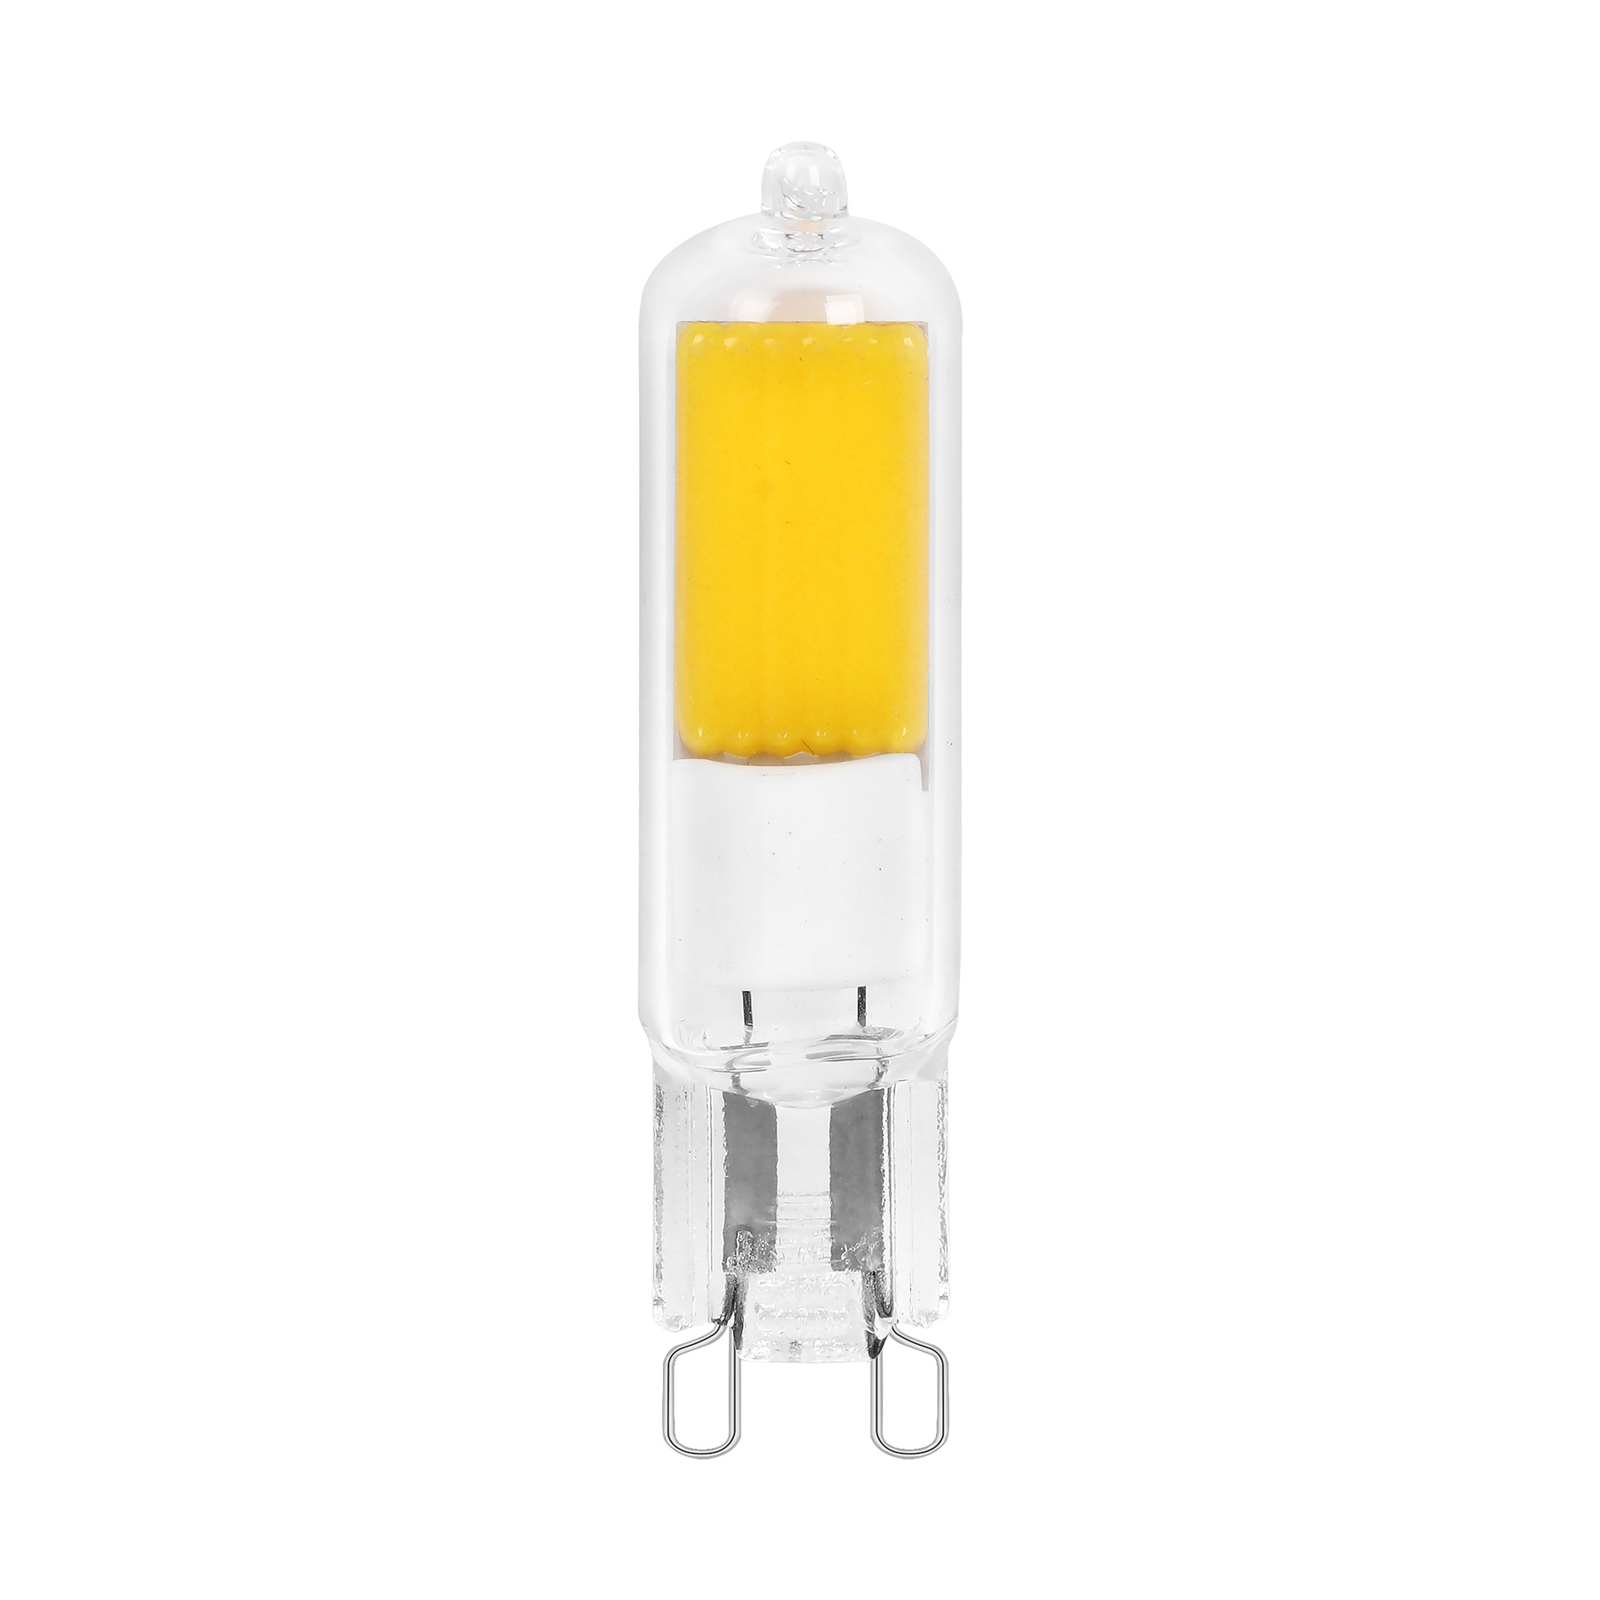 Arcchio bi-pin LED bulb, G9, 2.2W, 3000K, set of 2